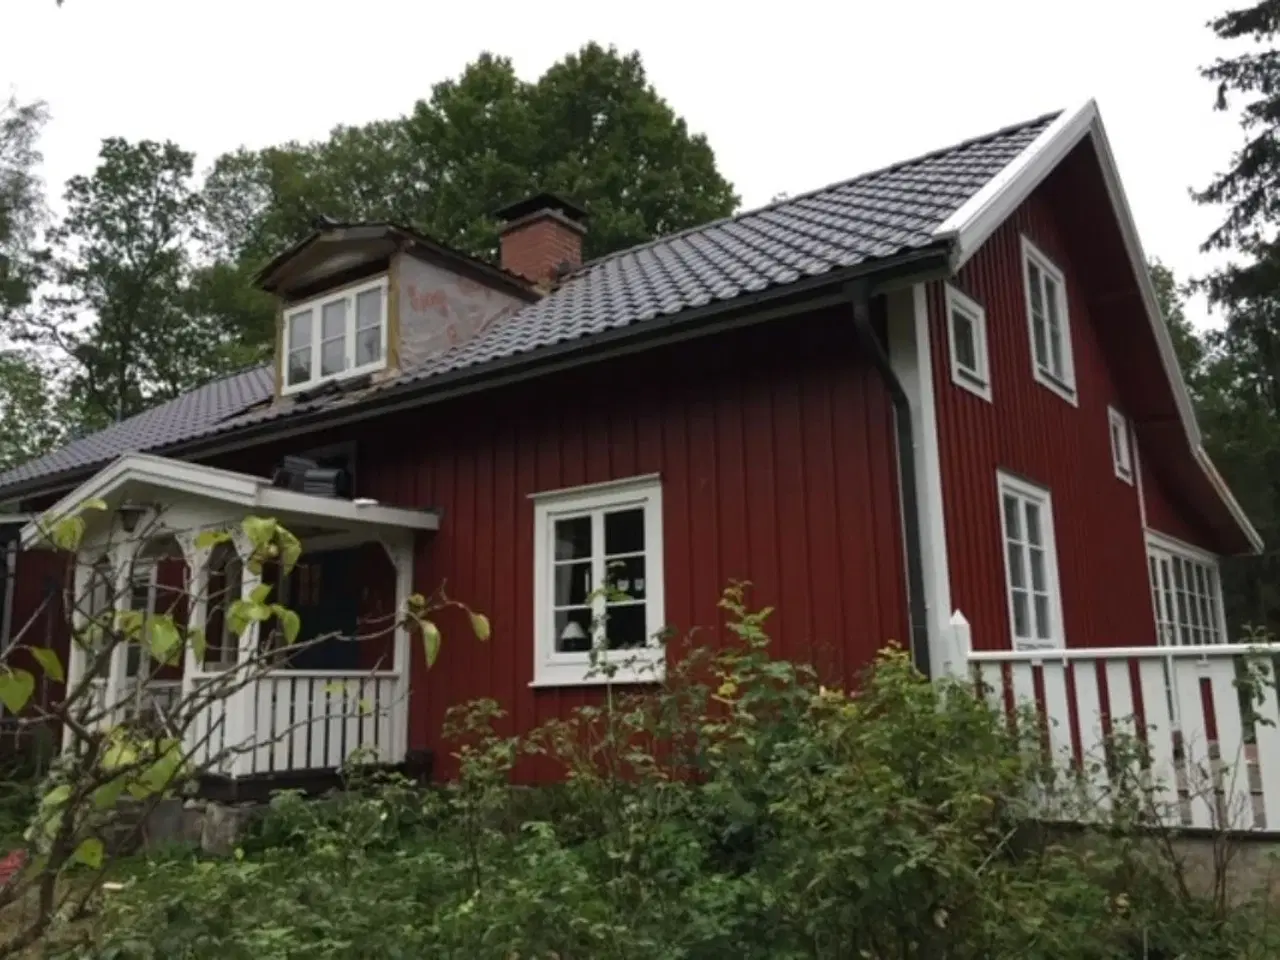 Billede 1 - Småland 150 km fra Helsingborg, 6 sovepladser, i skov nær sø udlejes